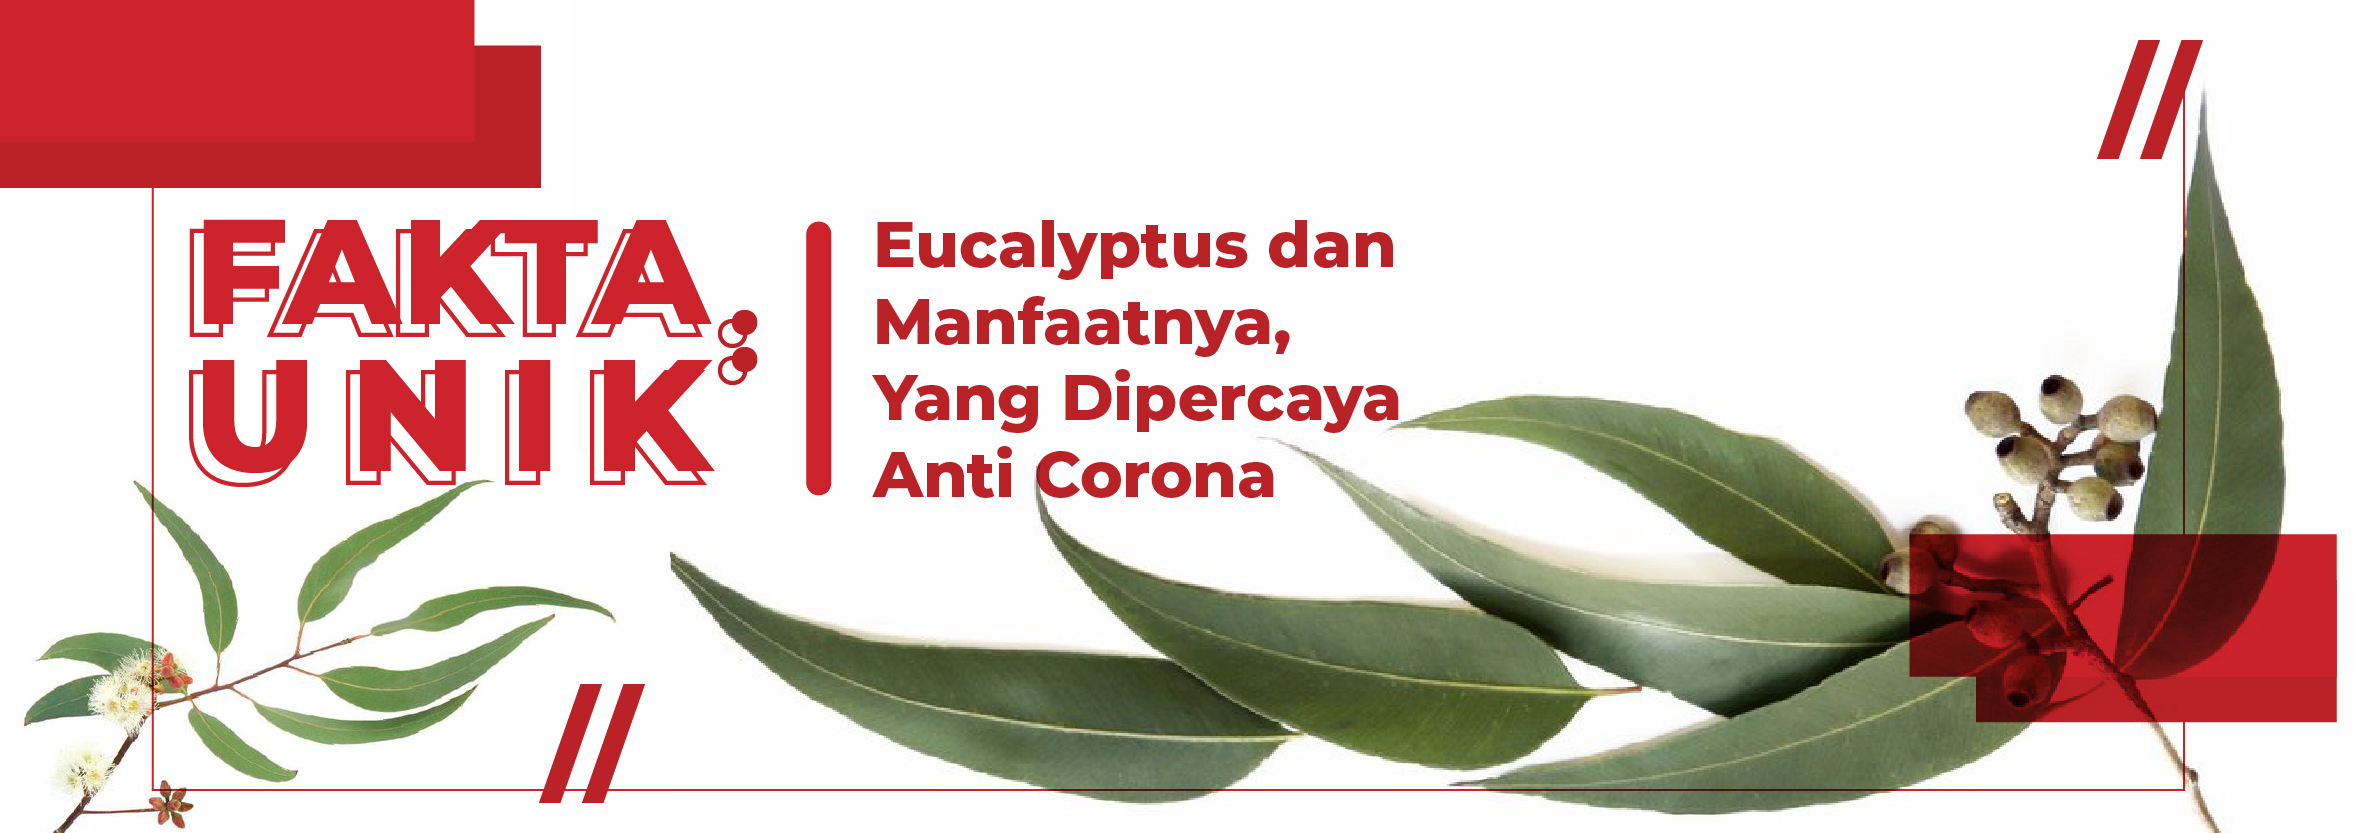 Fakta Unik: Eucalyptus dan Manfaatnya, Yang Dipercaya Anti Corona